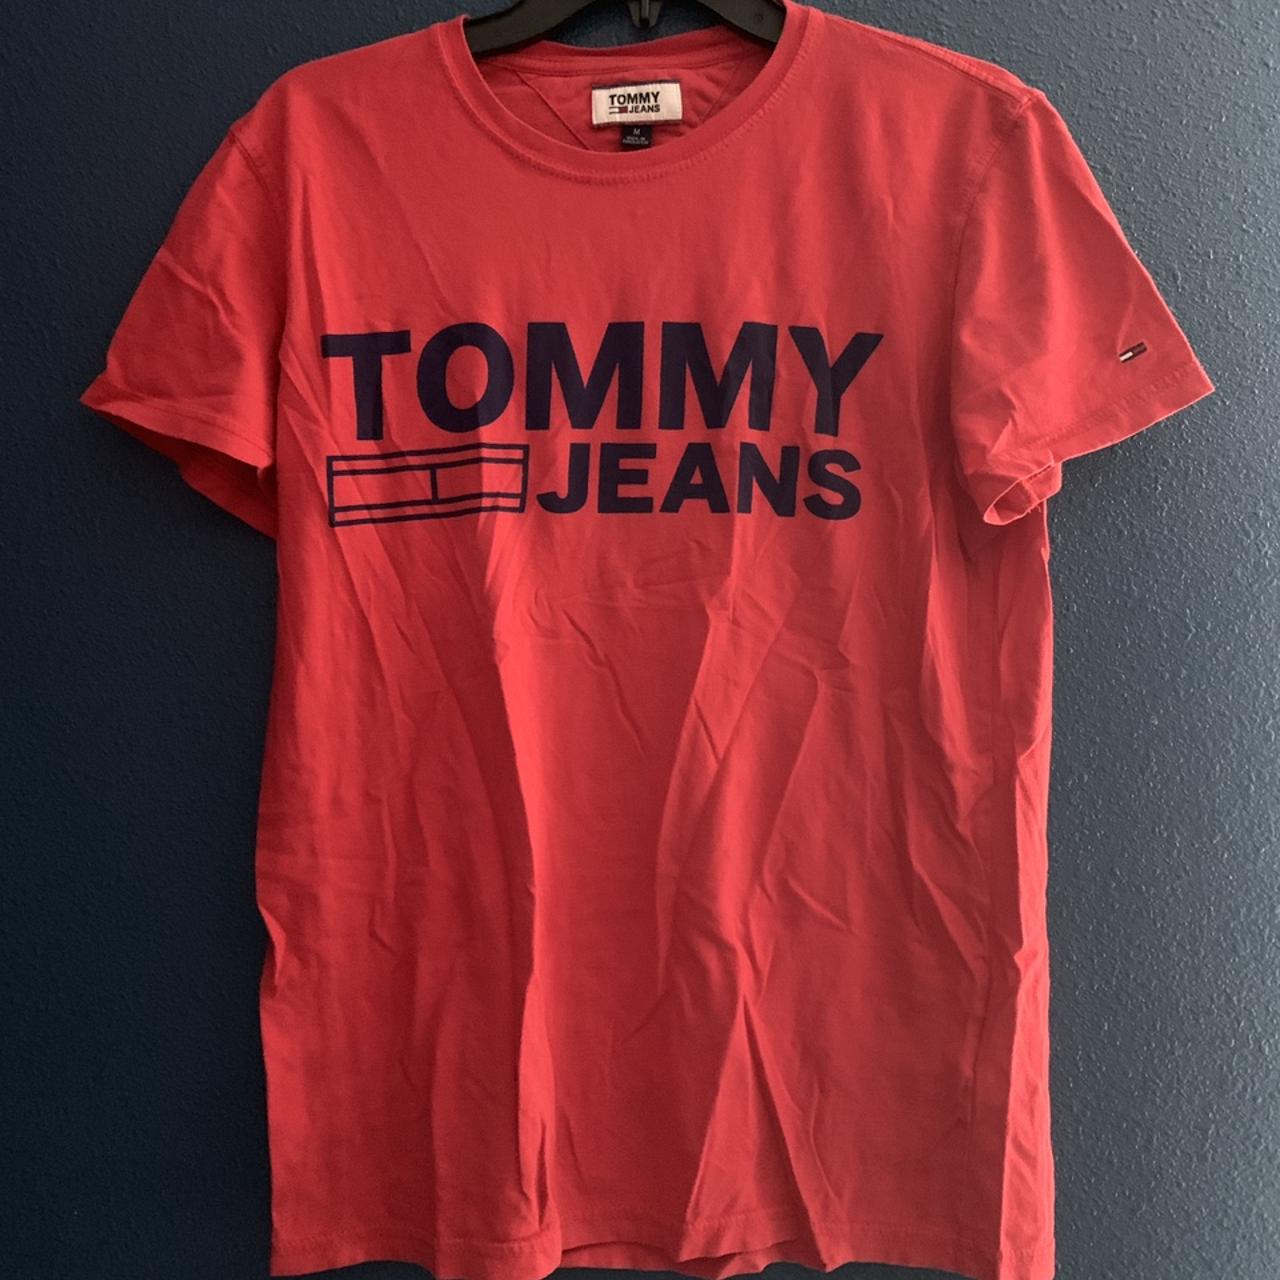 Vintage Tommy Hilfiger Heans Denim T Shirt Tee Red... - Depop